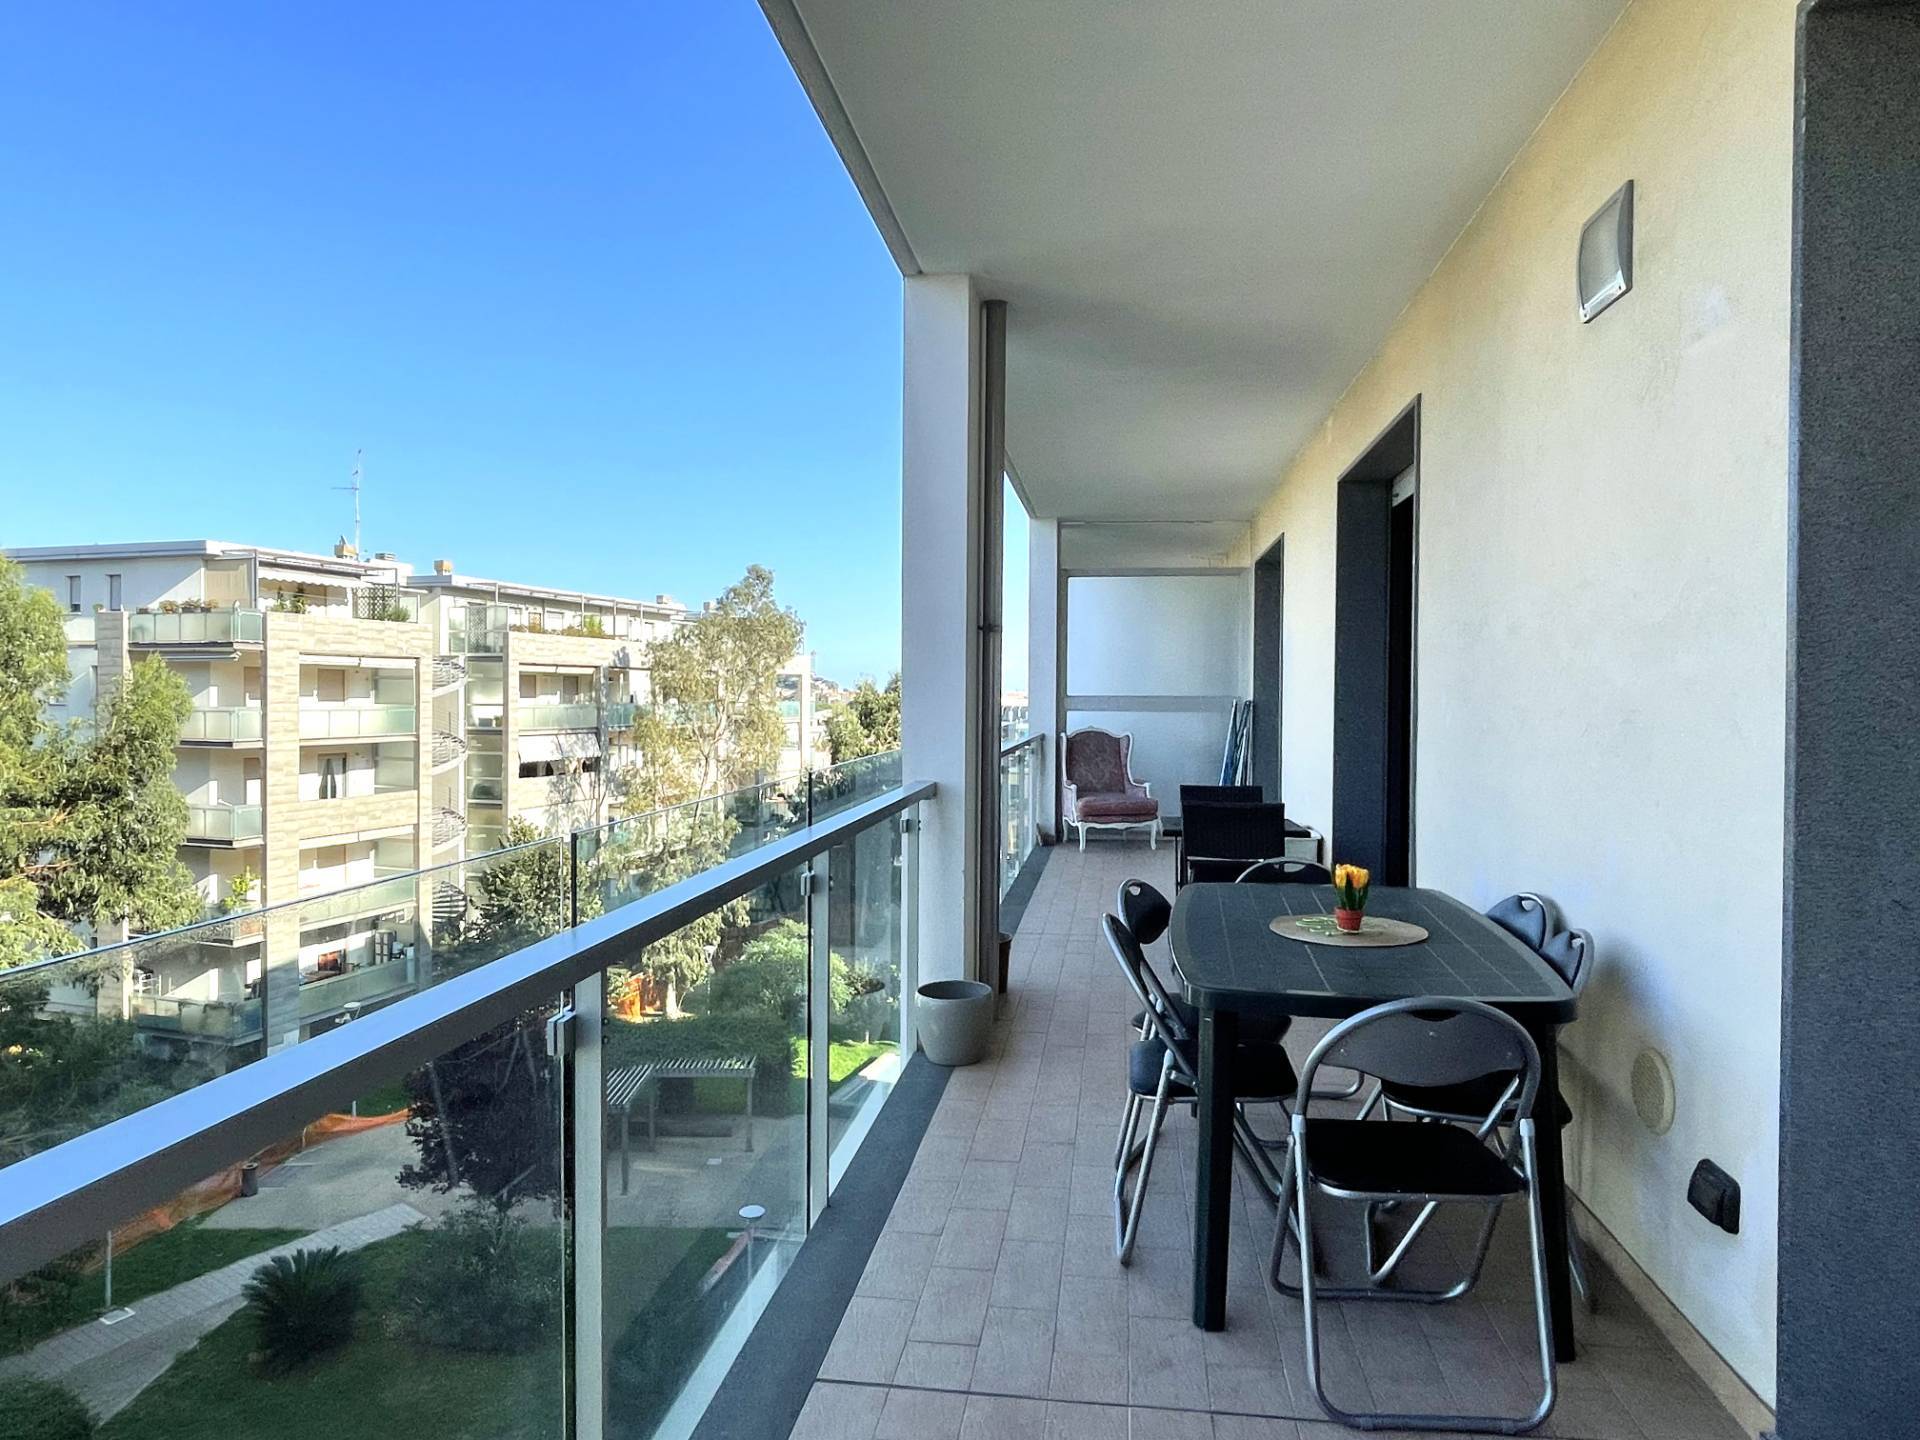 Appartamento in vendita a Albissola Marina, 3 locali, prezzo € 310.000 | PortaleAgenzieImmobiliari.it